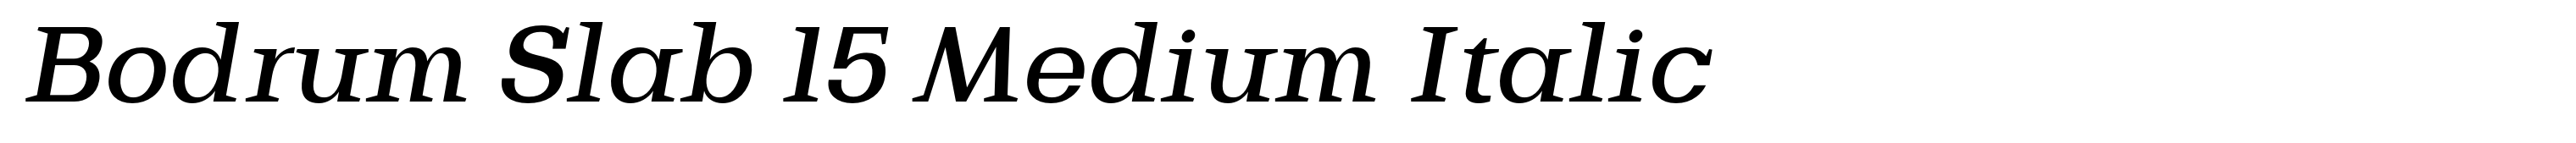 Bodrum Slab 15 Medium Italic